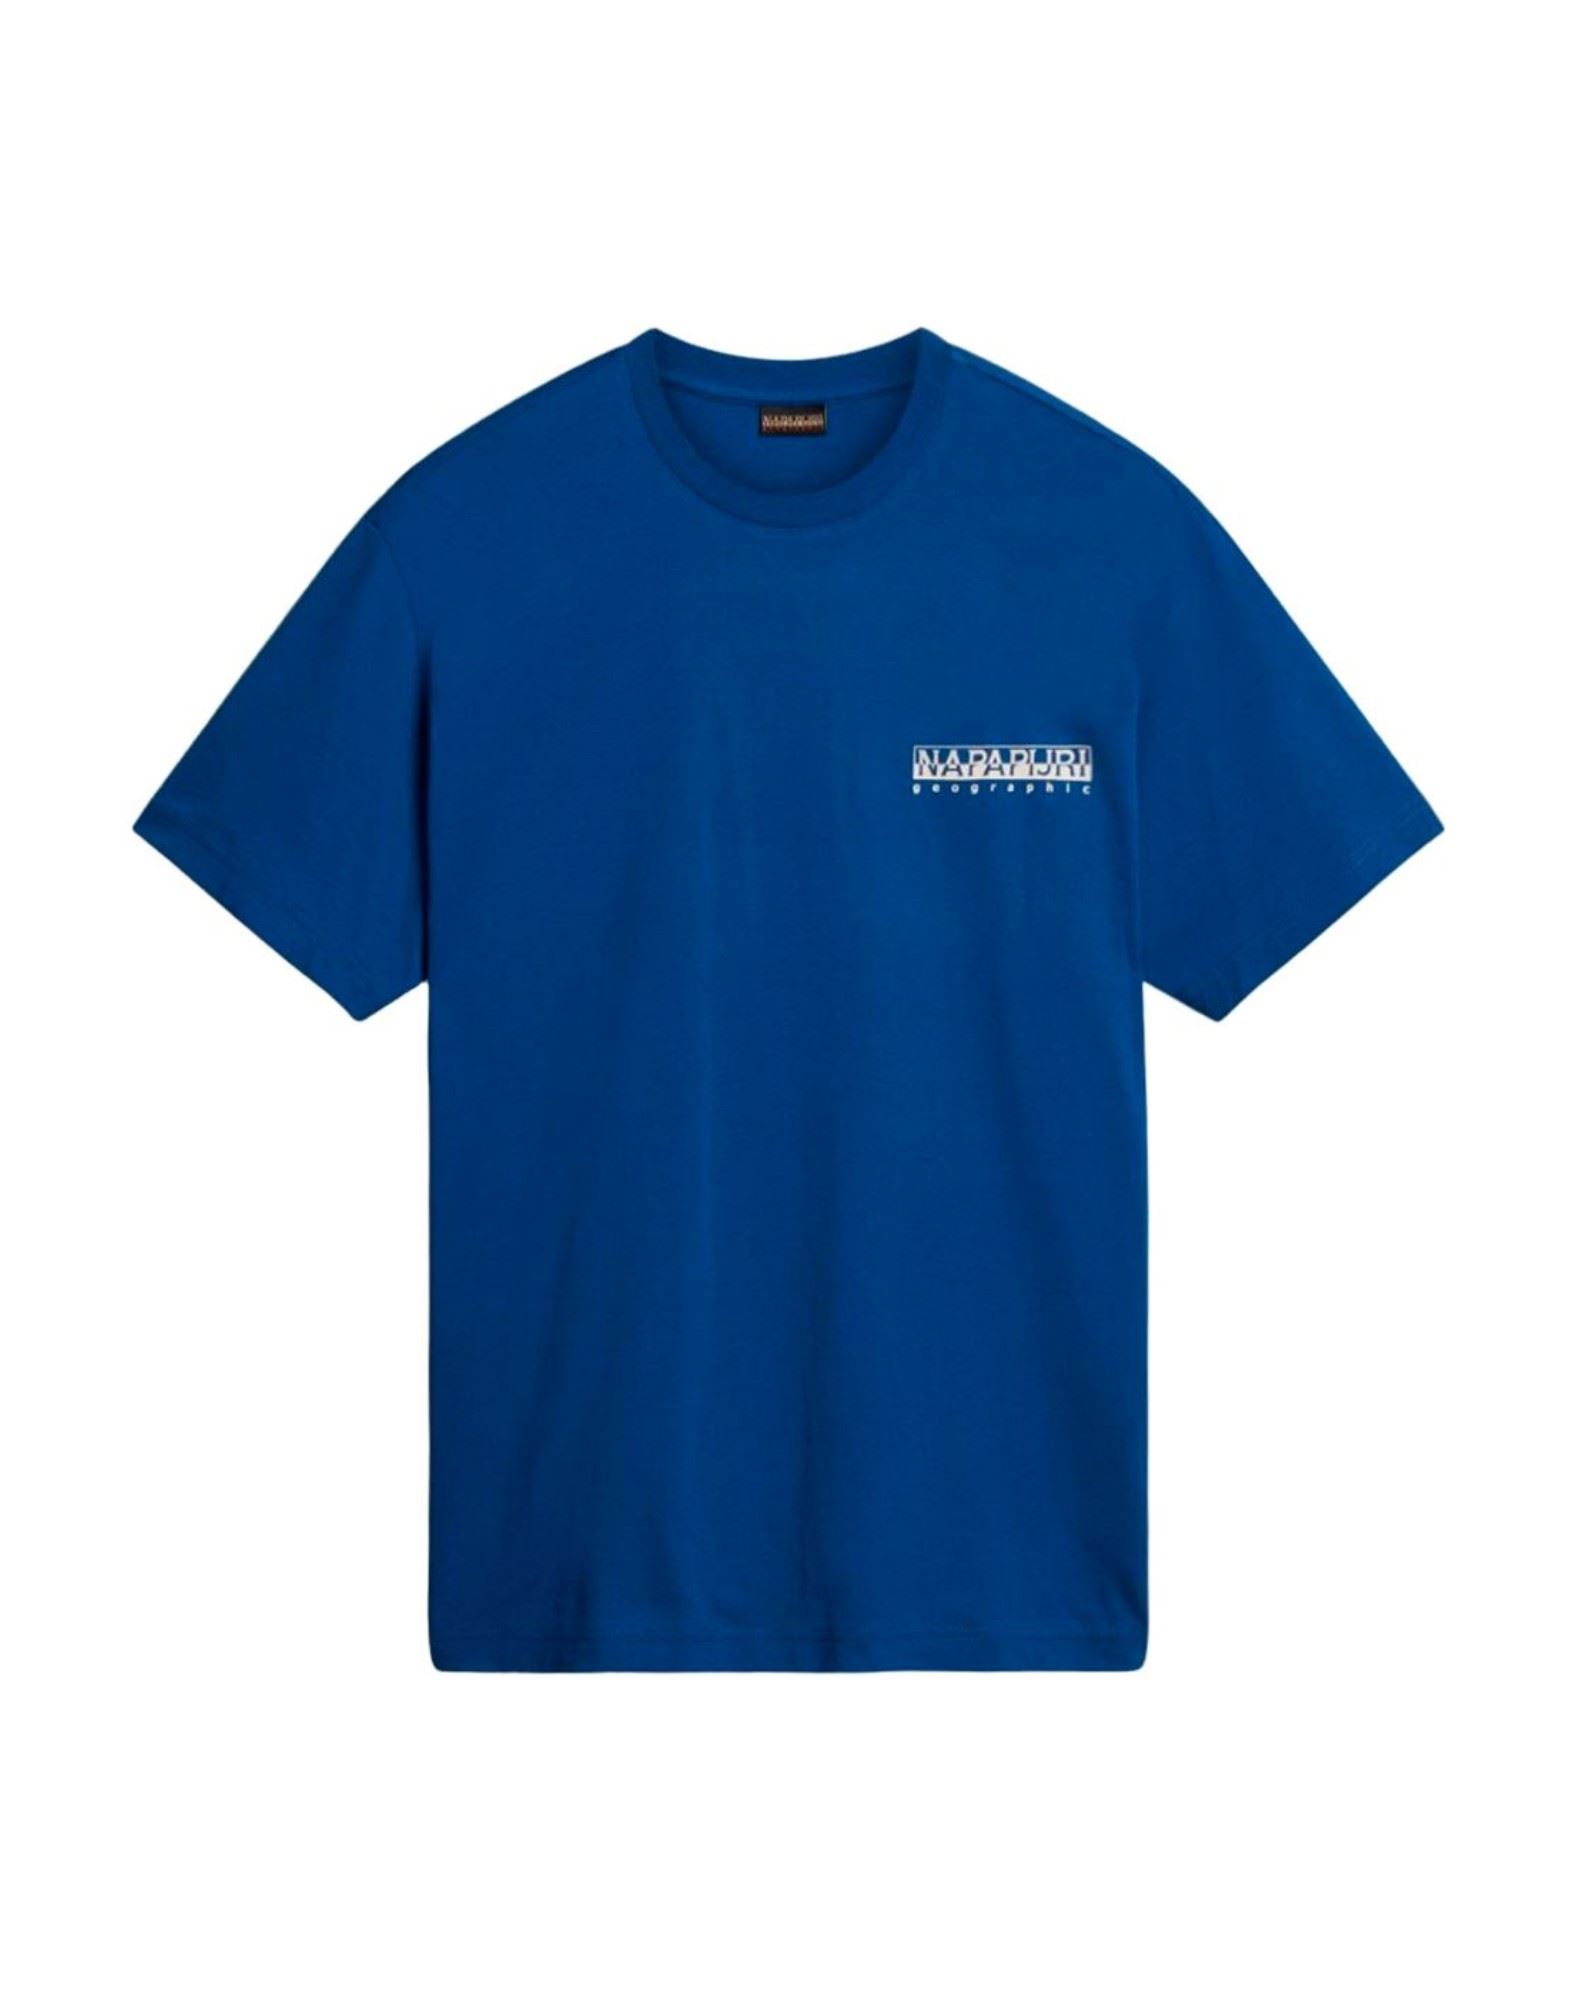 NAPAPIJRI T-shirts Herren Blau von NAPAPIJRI